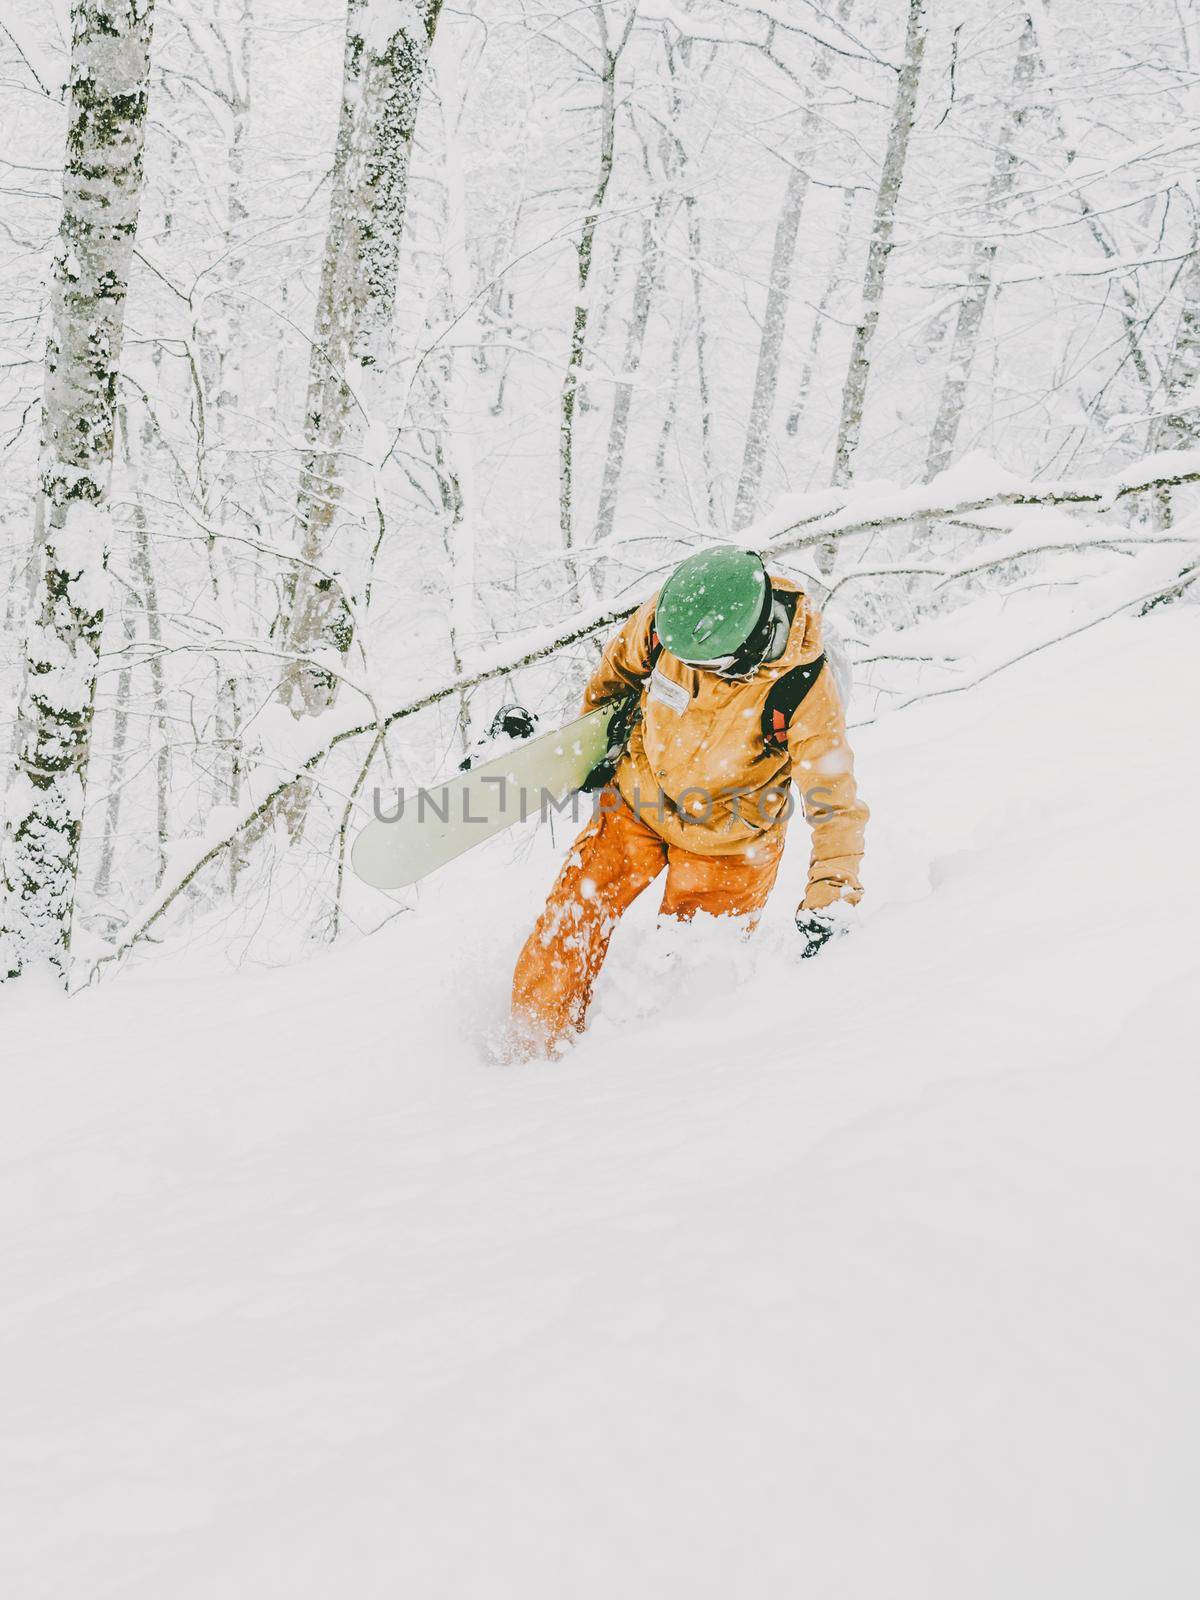 Snowboarder man walking in forest by alexAleksei